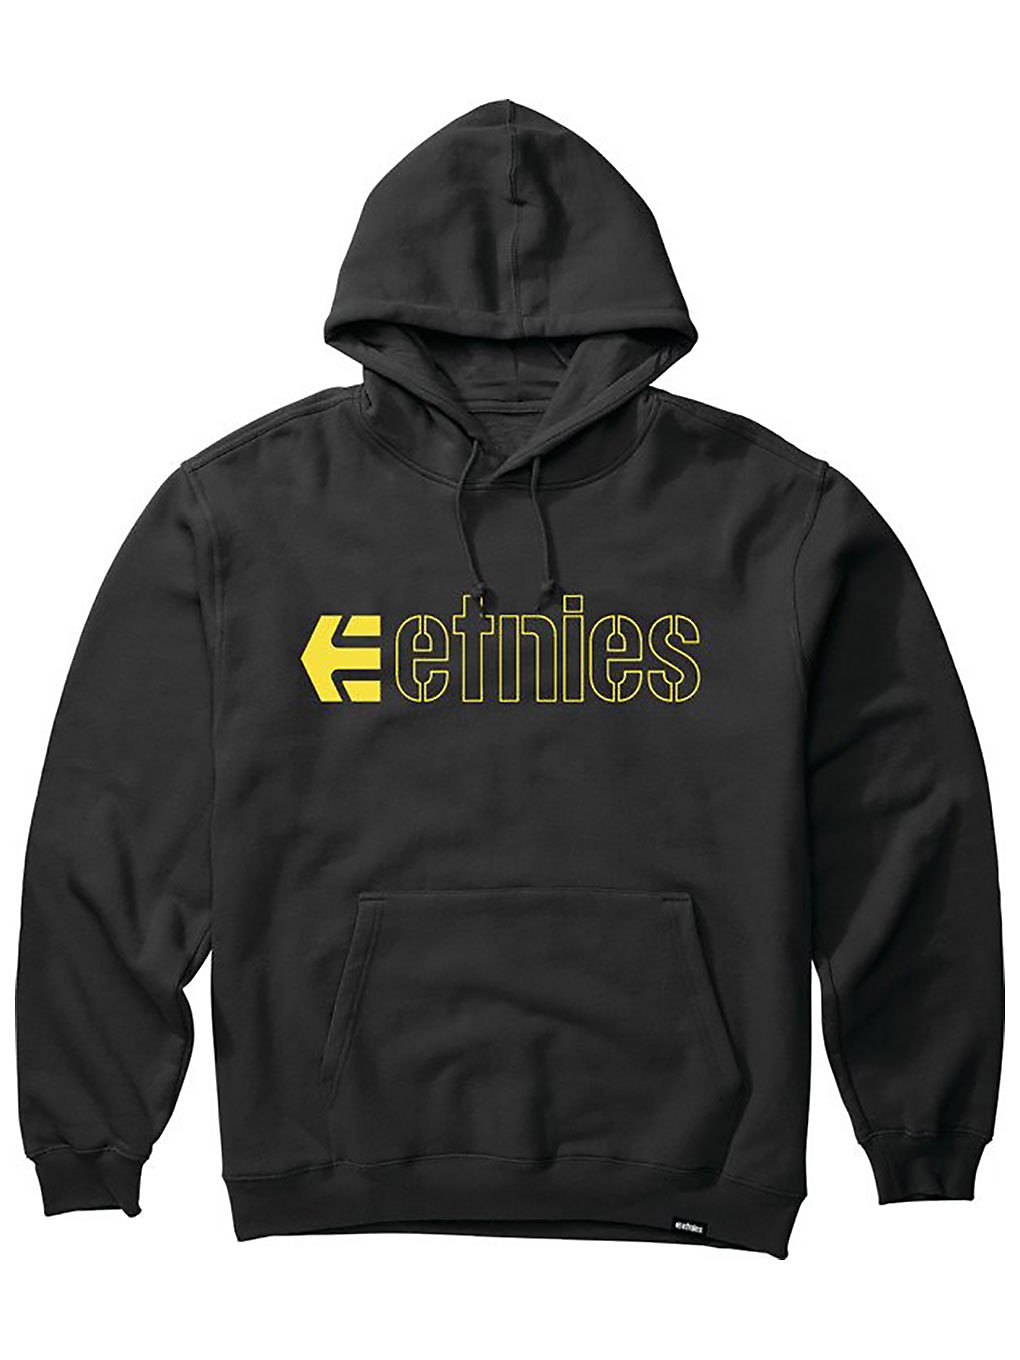 Etnies ecorp hoodie musta, etnies